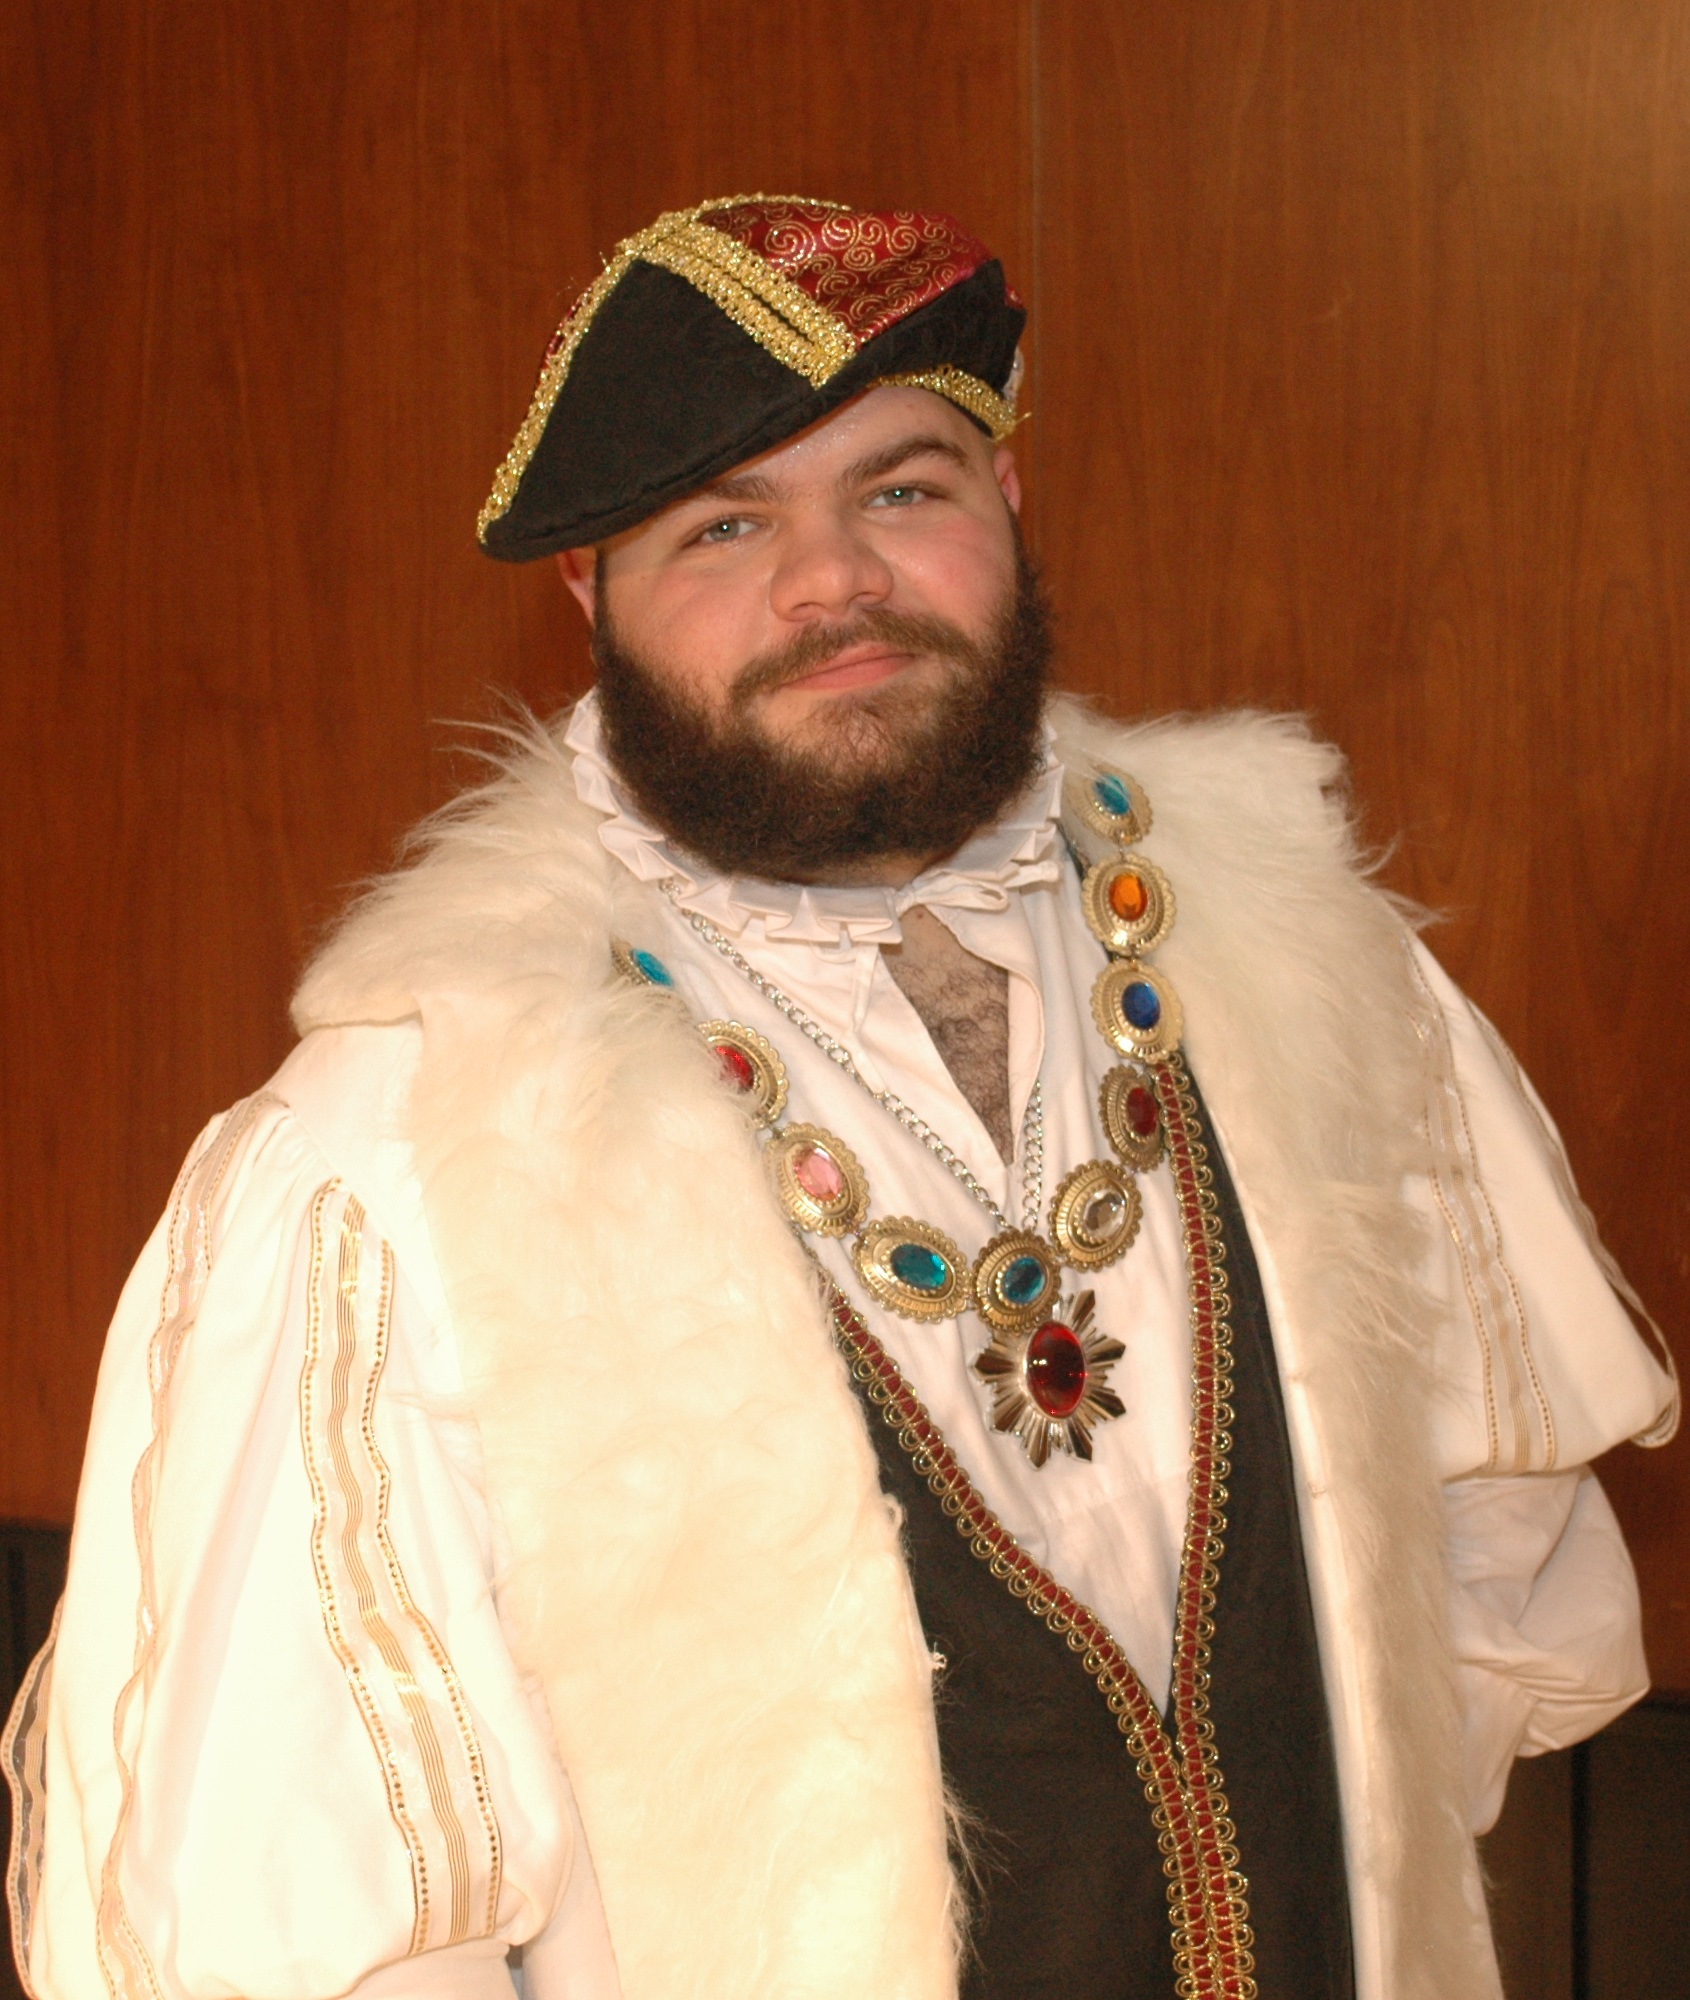 John Phillians as King Henry VIII